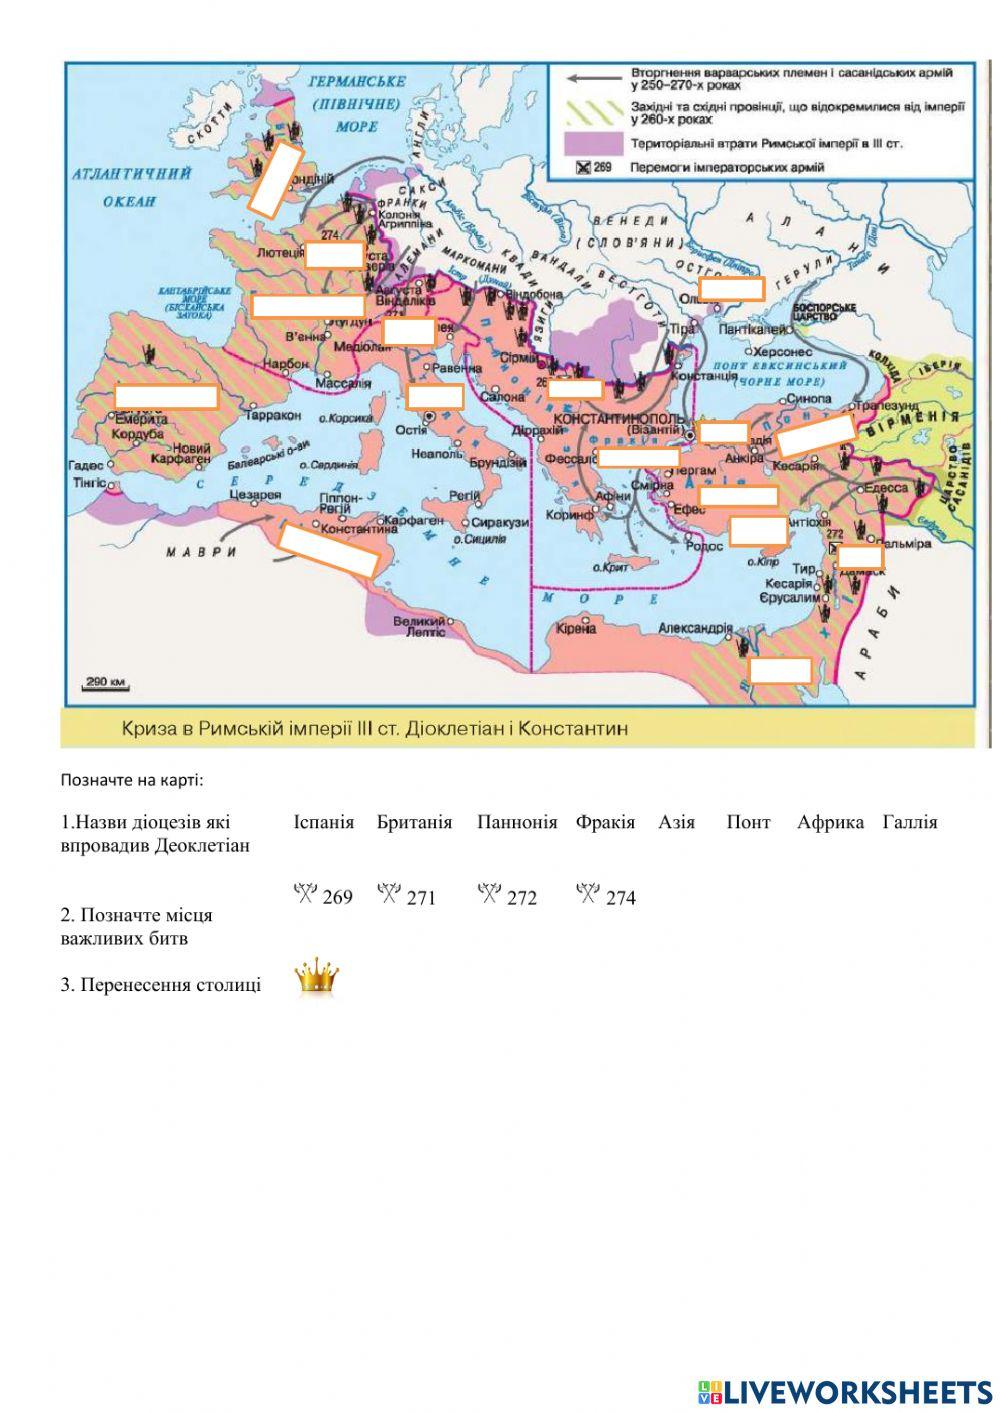 Криза Римської імперії